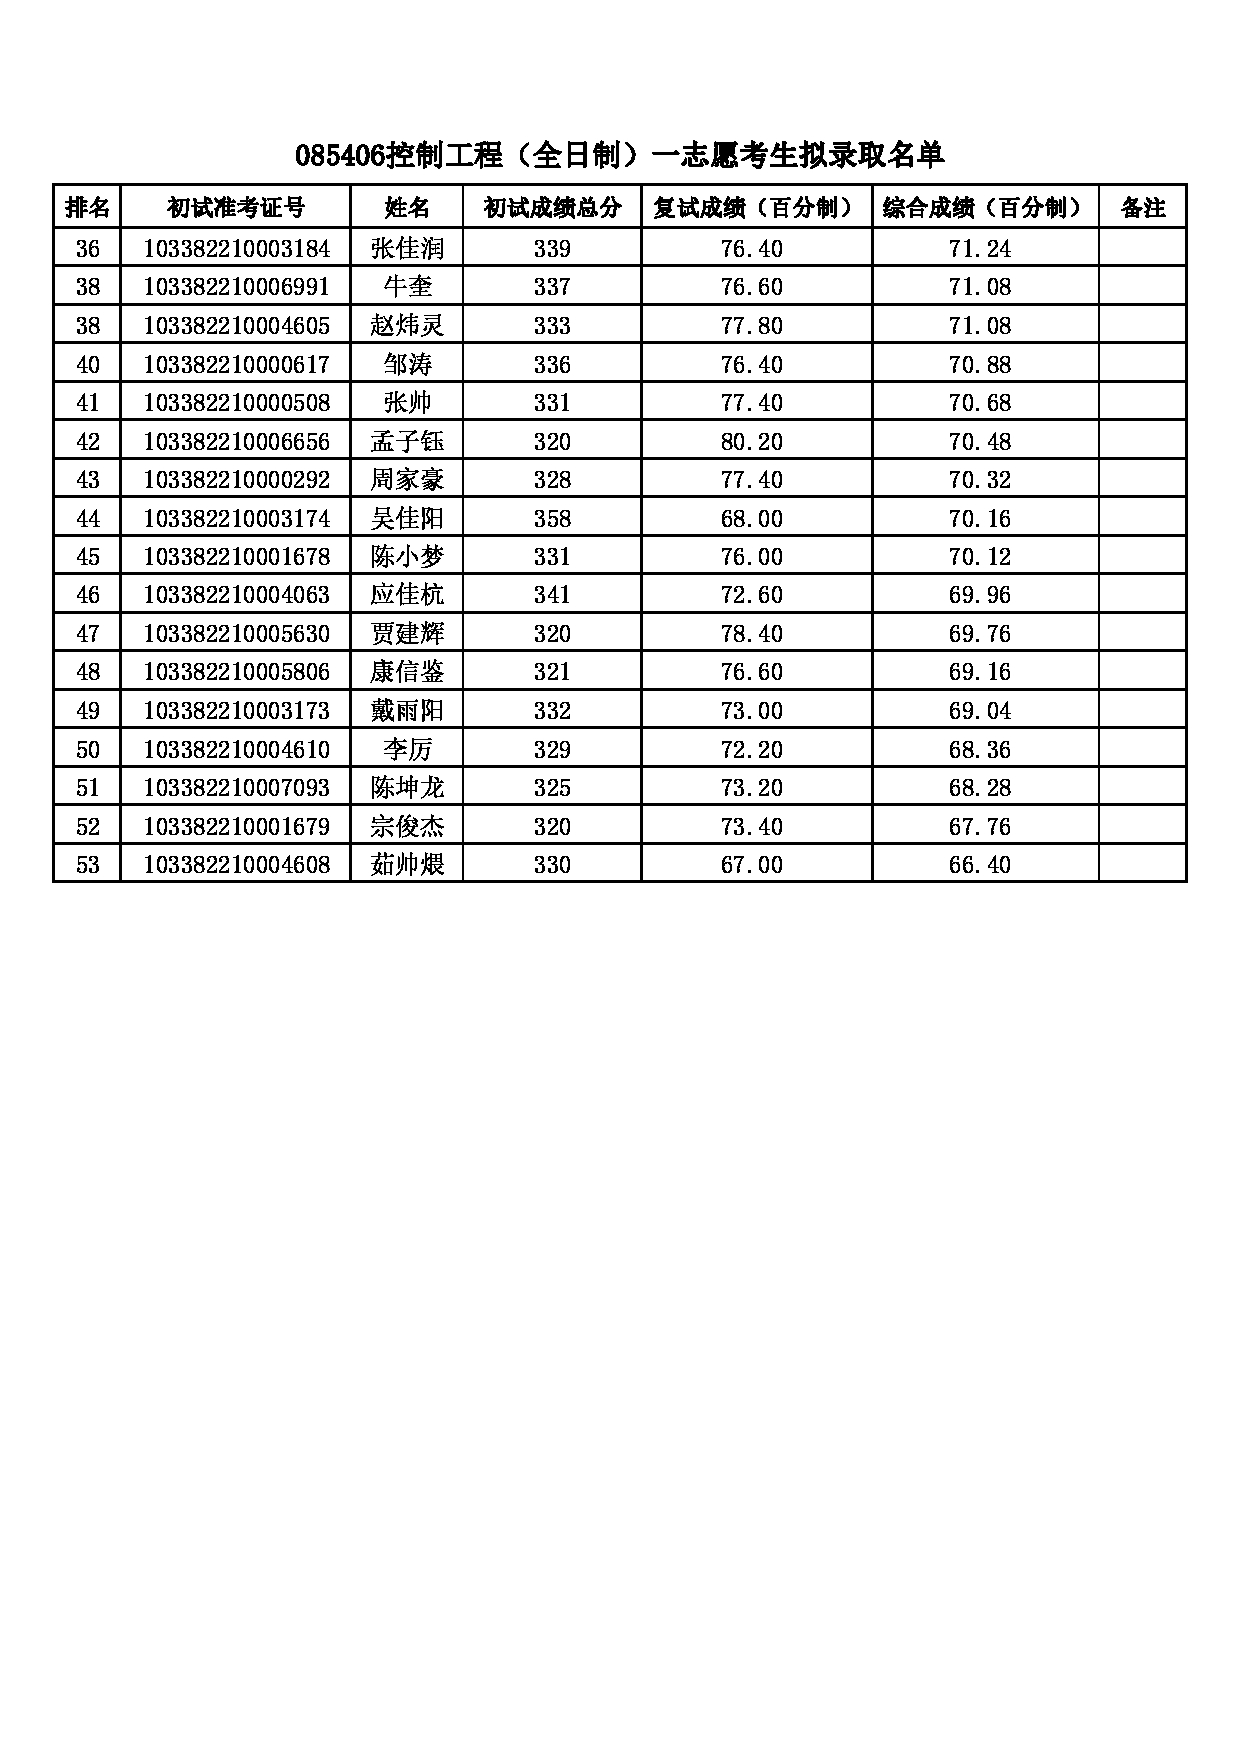 2022考研拟录取名单：浙江理工大学2022年 085406控制工程一志愿考生拟录取名单第2页